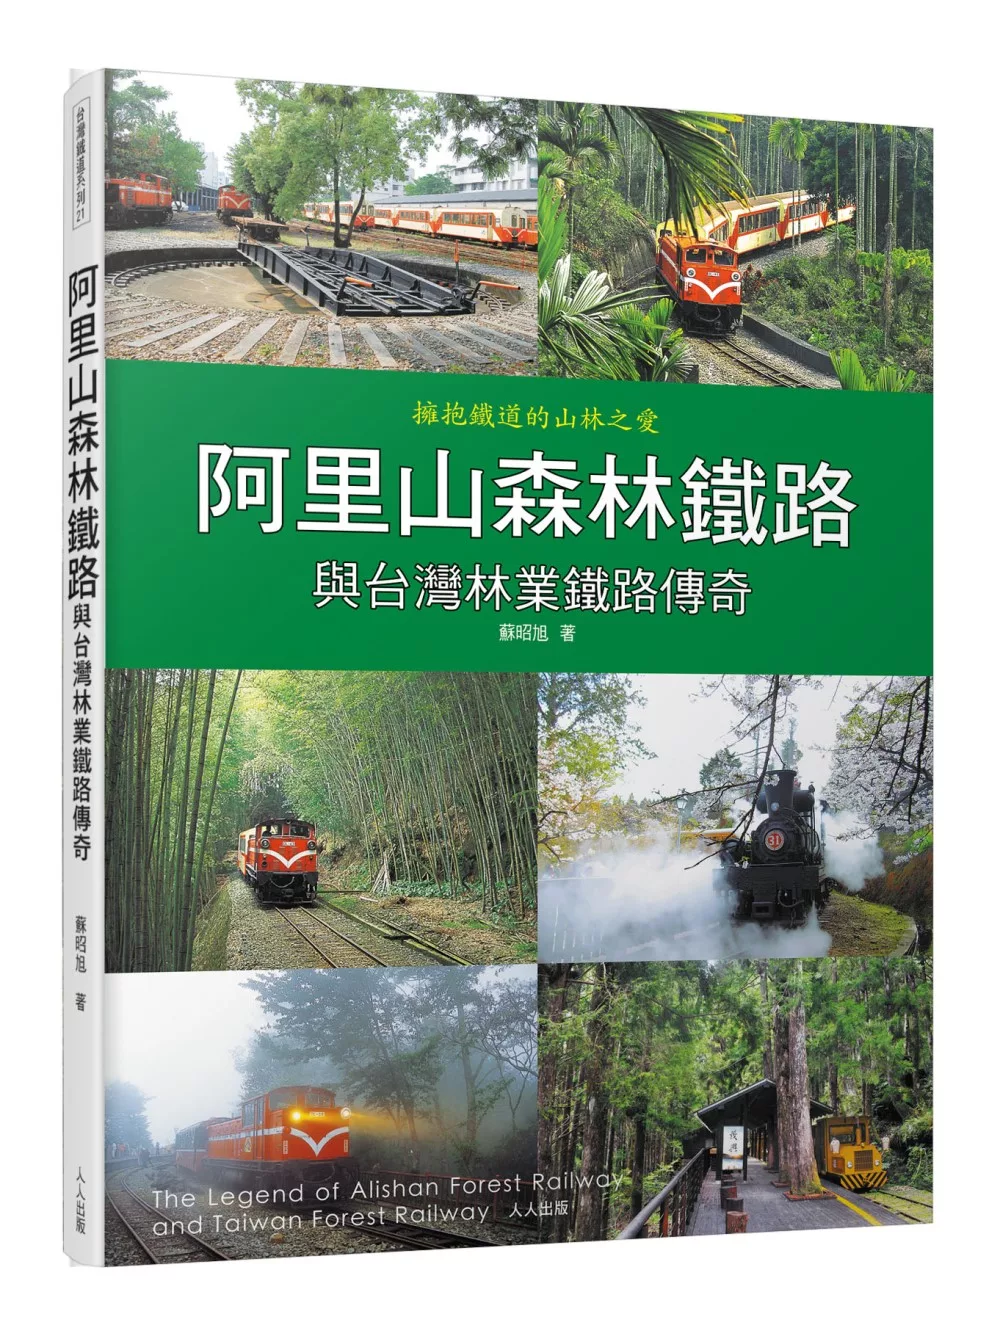 阿里山森林鐵路與台灣林業鐵路傳奇